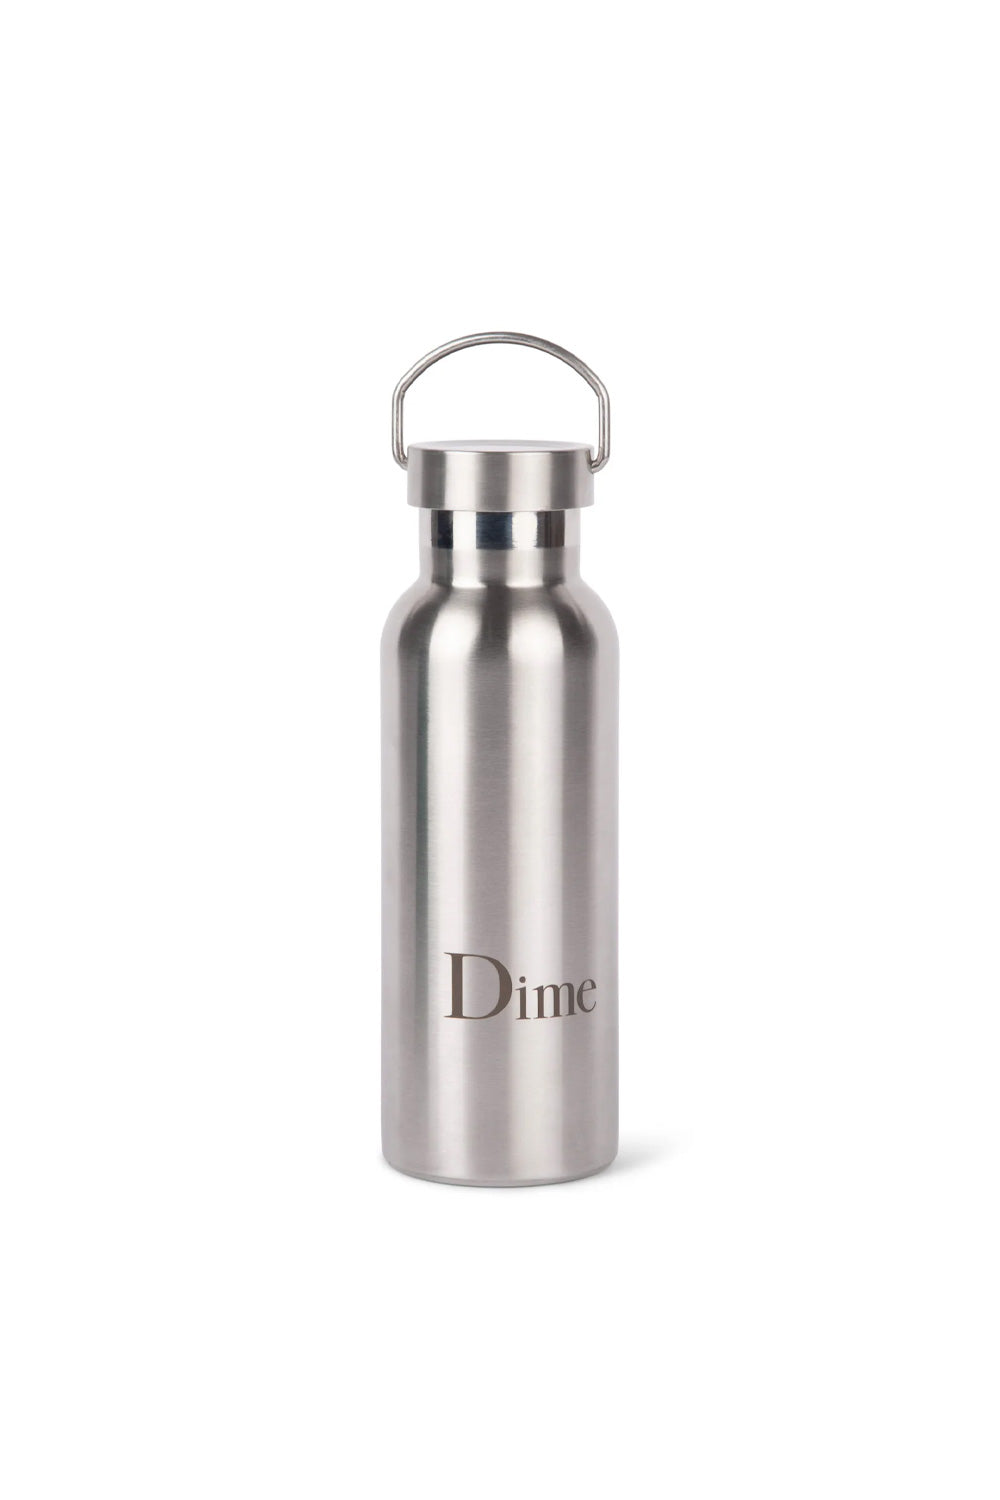 Dime Water Bottle Silver - BONKERS